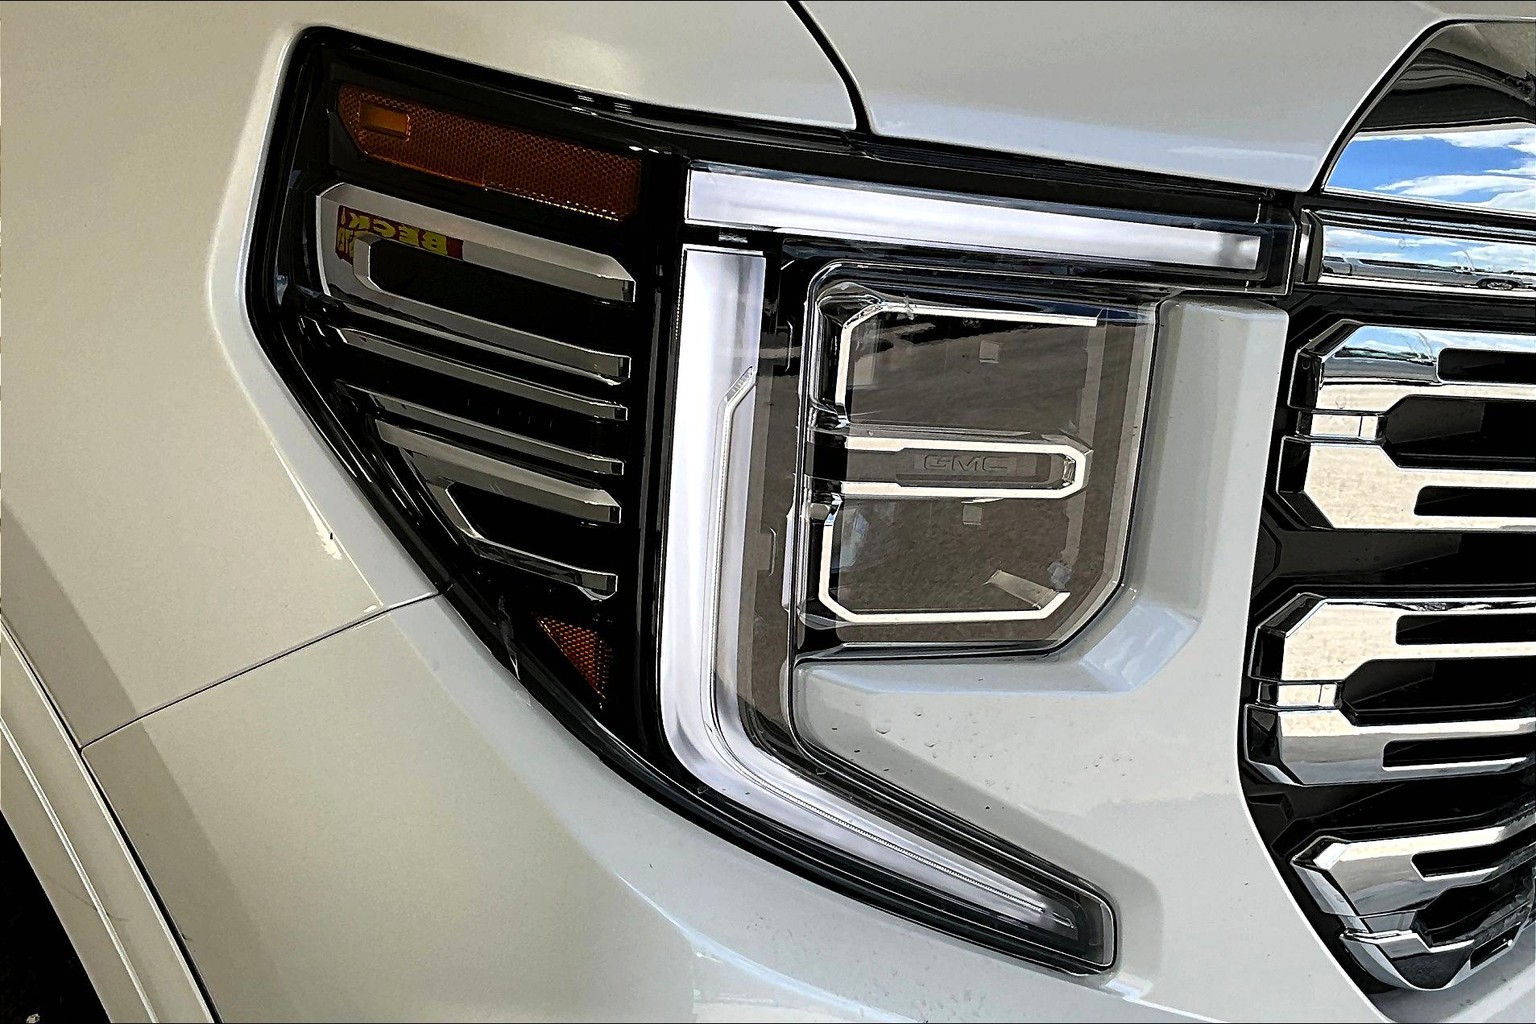 OEM Linking Pin: 2019 Chevrolet Silverado/GMC Sierra LD - Radiator